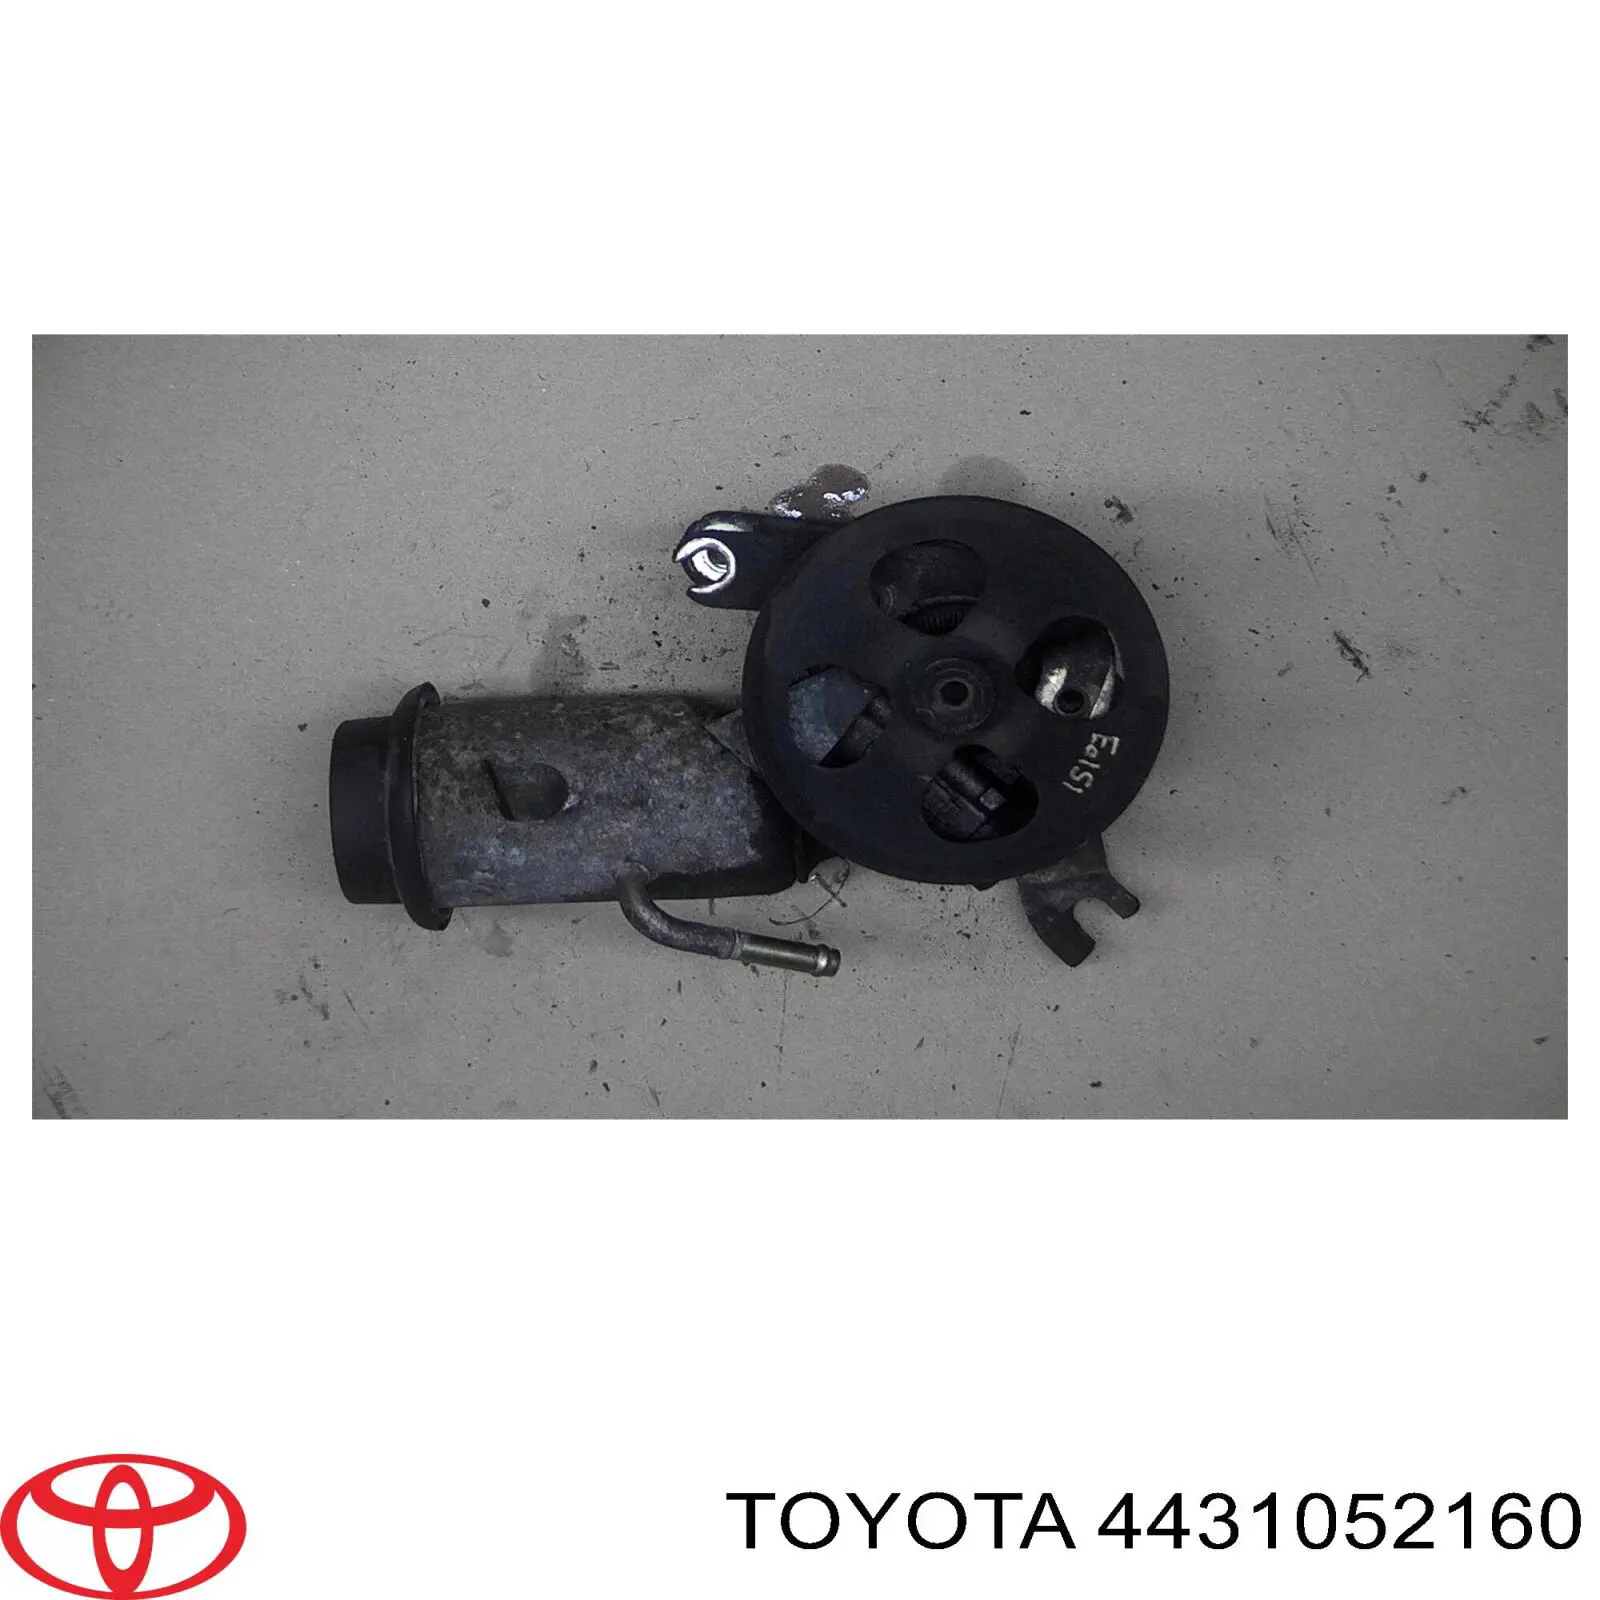 Bomba da Direção hidrâulica assistida para Toyota Yaris 